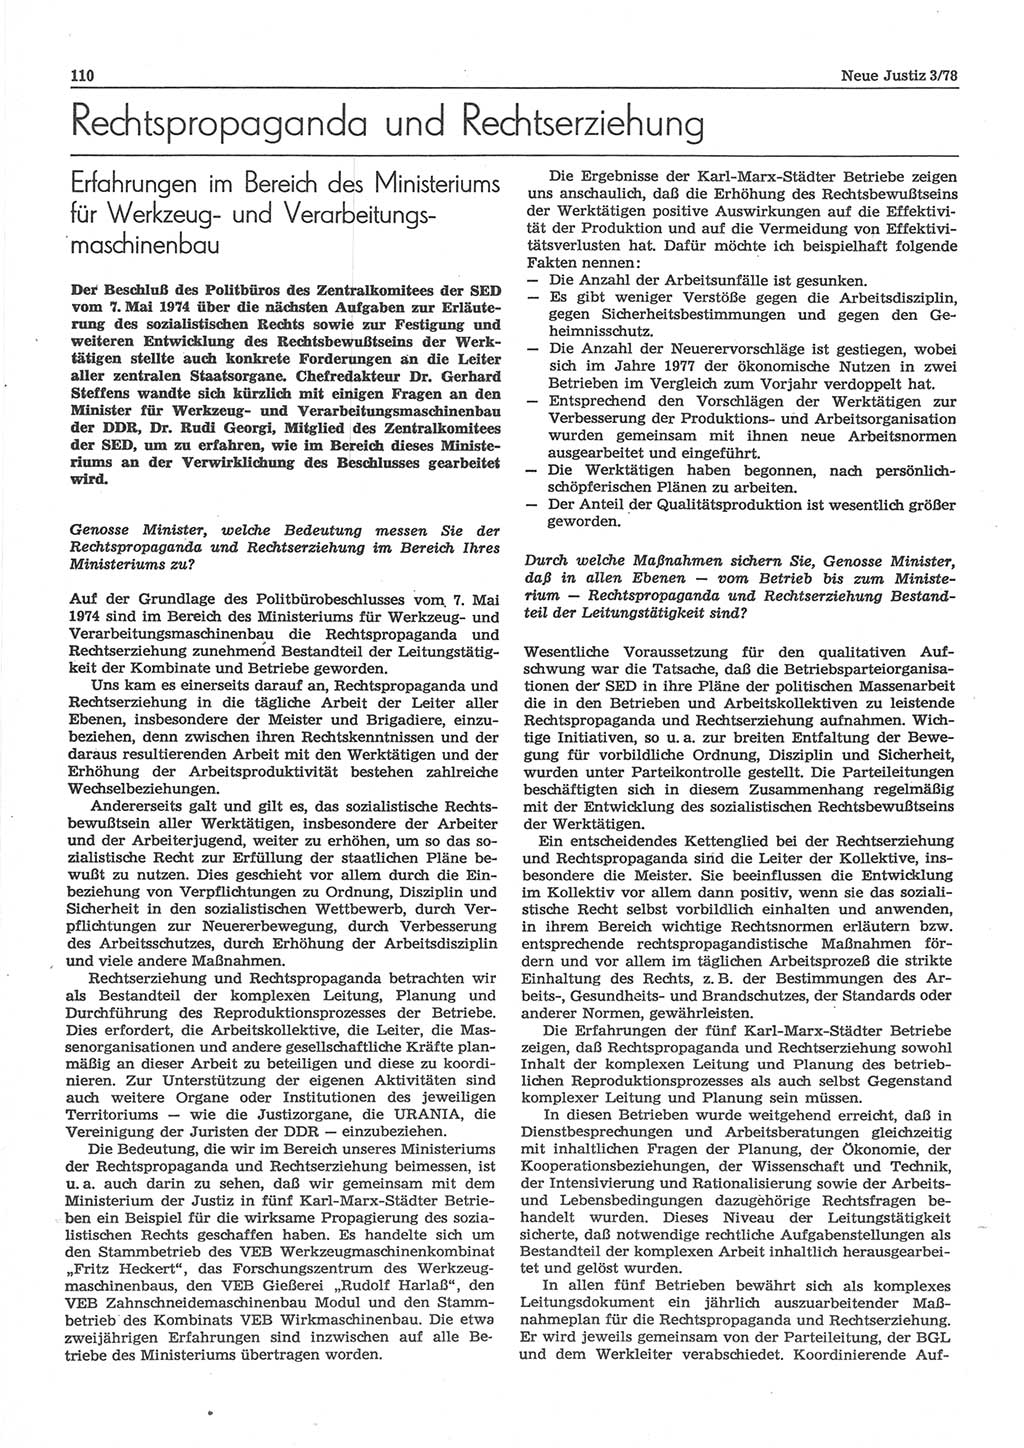 Neue Justiz (NJ), Zeitschrift für sozialistisches Recht und Gesetzlichkeit [Deutsche Demokratische Republik (DDR)], 32. Jahrgang 1978, Seite 110 (NJ DDR 1978, S. 110)